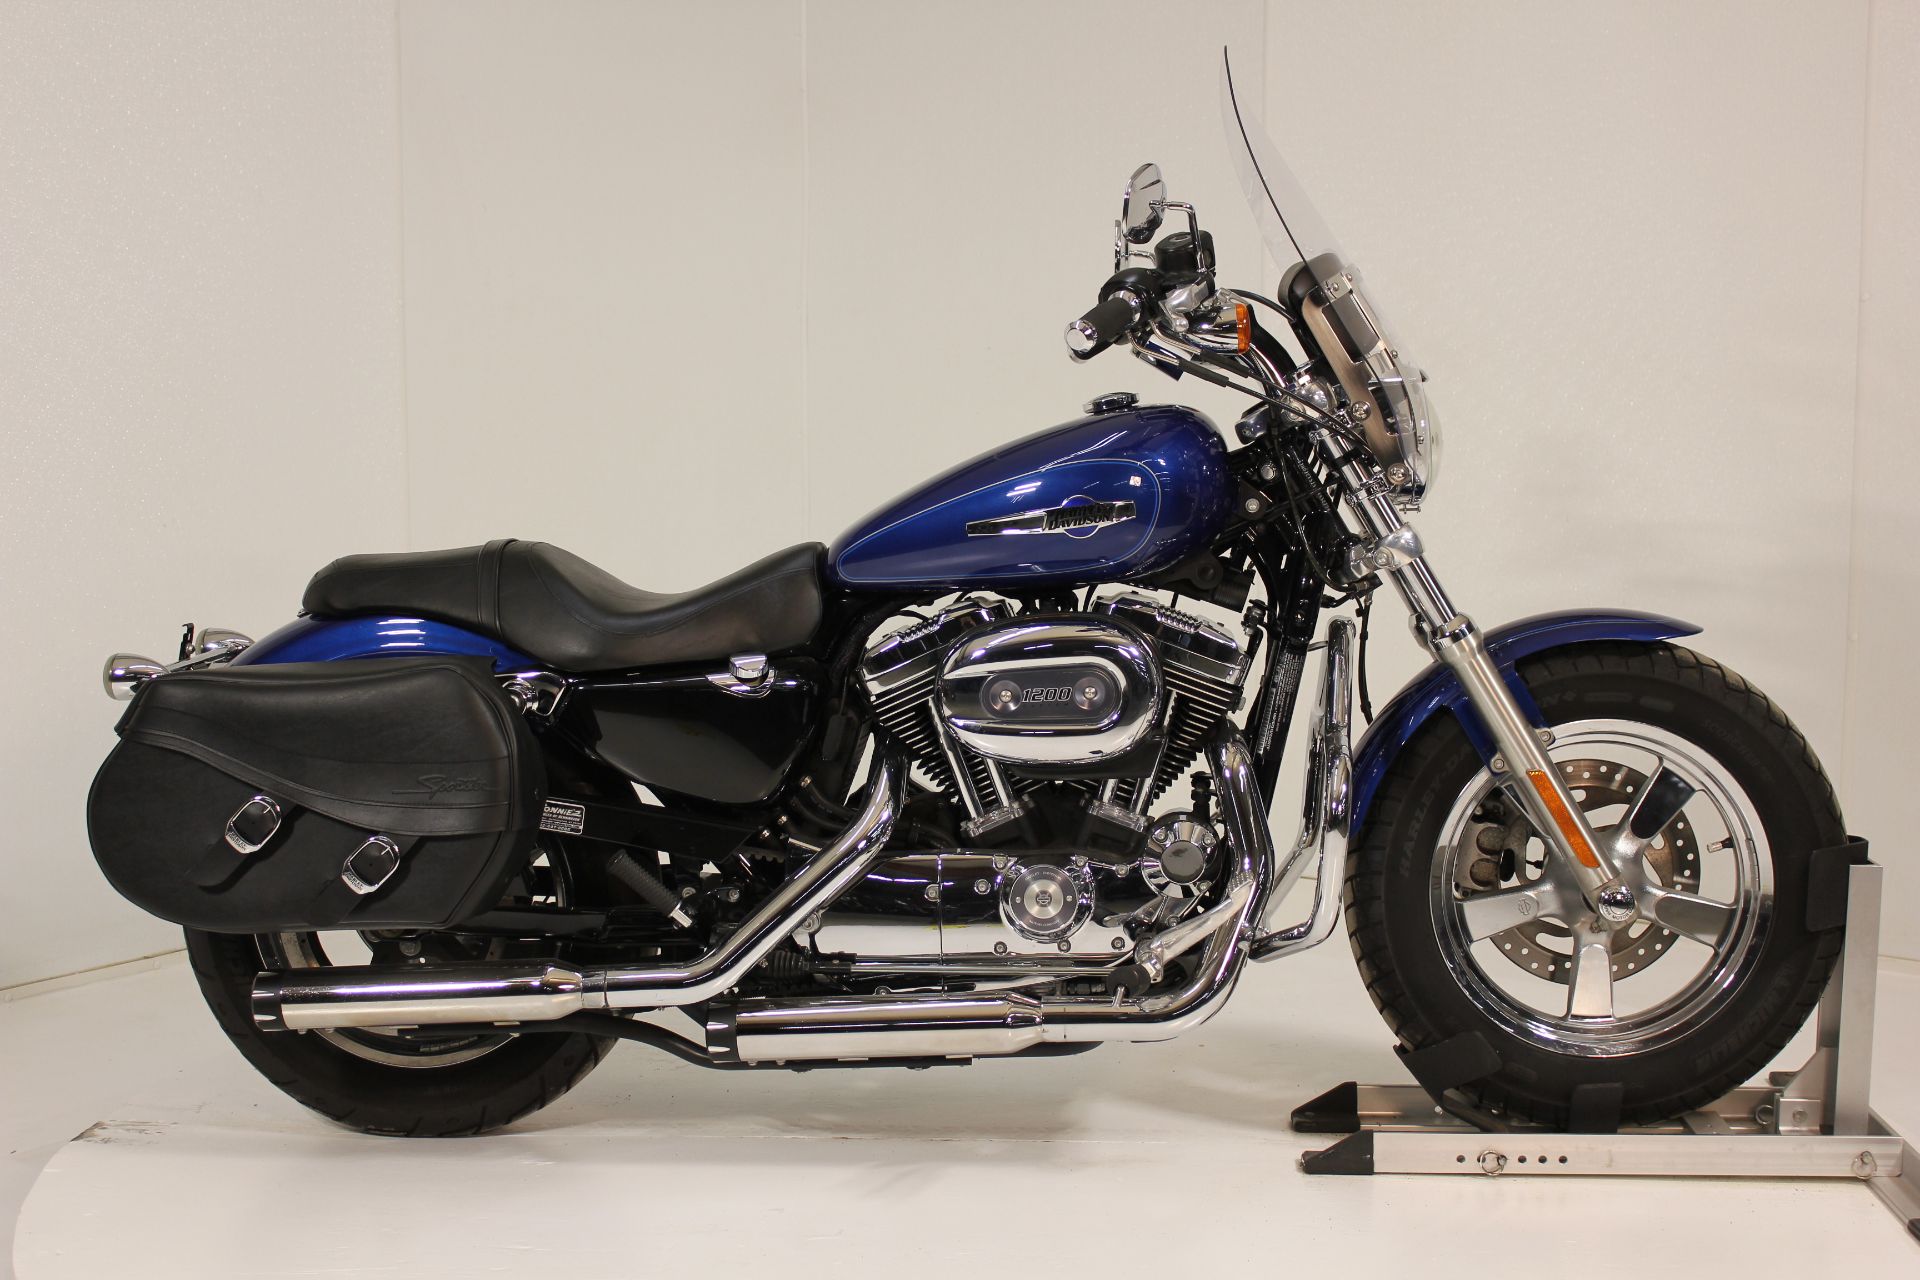 2015 Harley-Davidson 1200 Custom in Pittsfield, Massachusetts - Photo 5